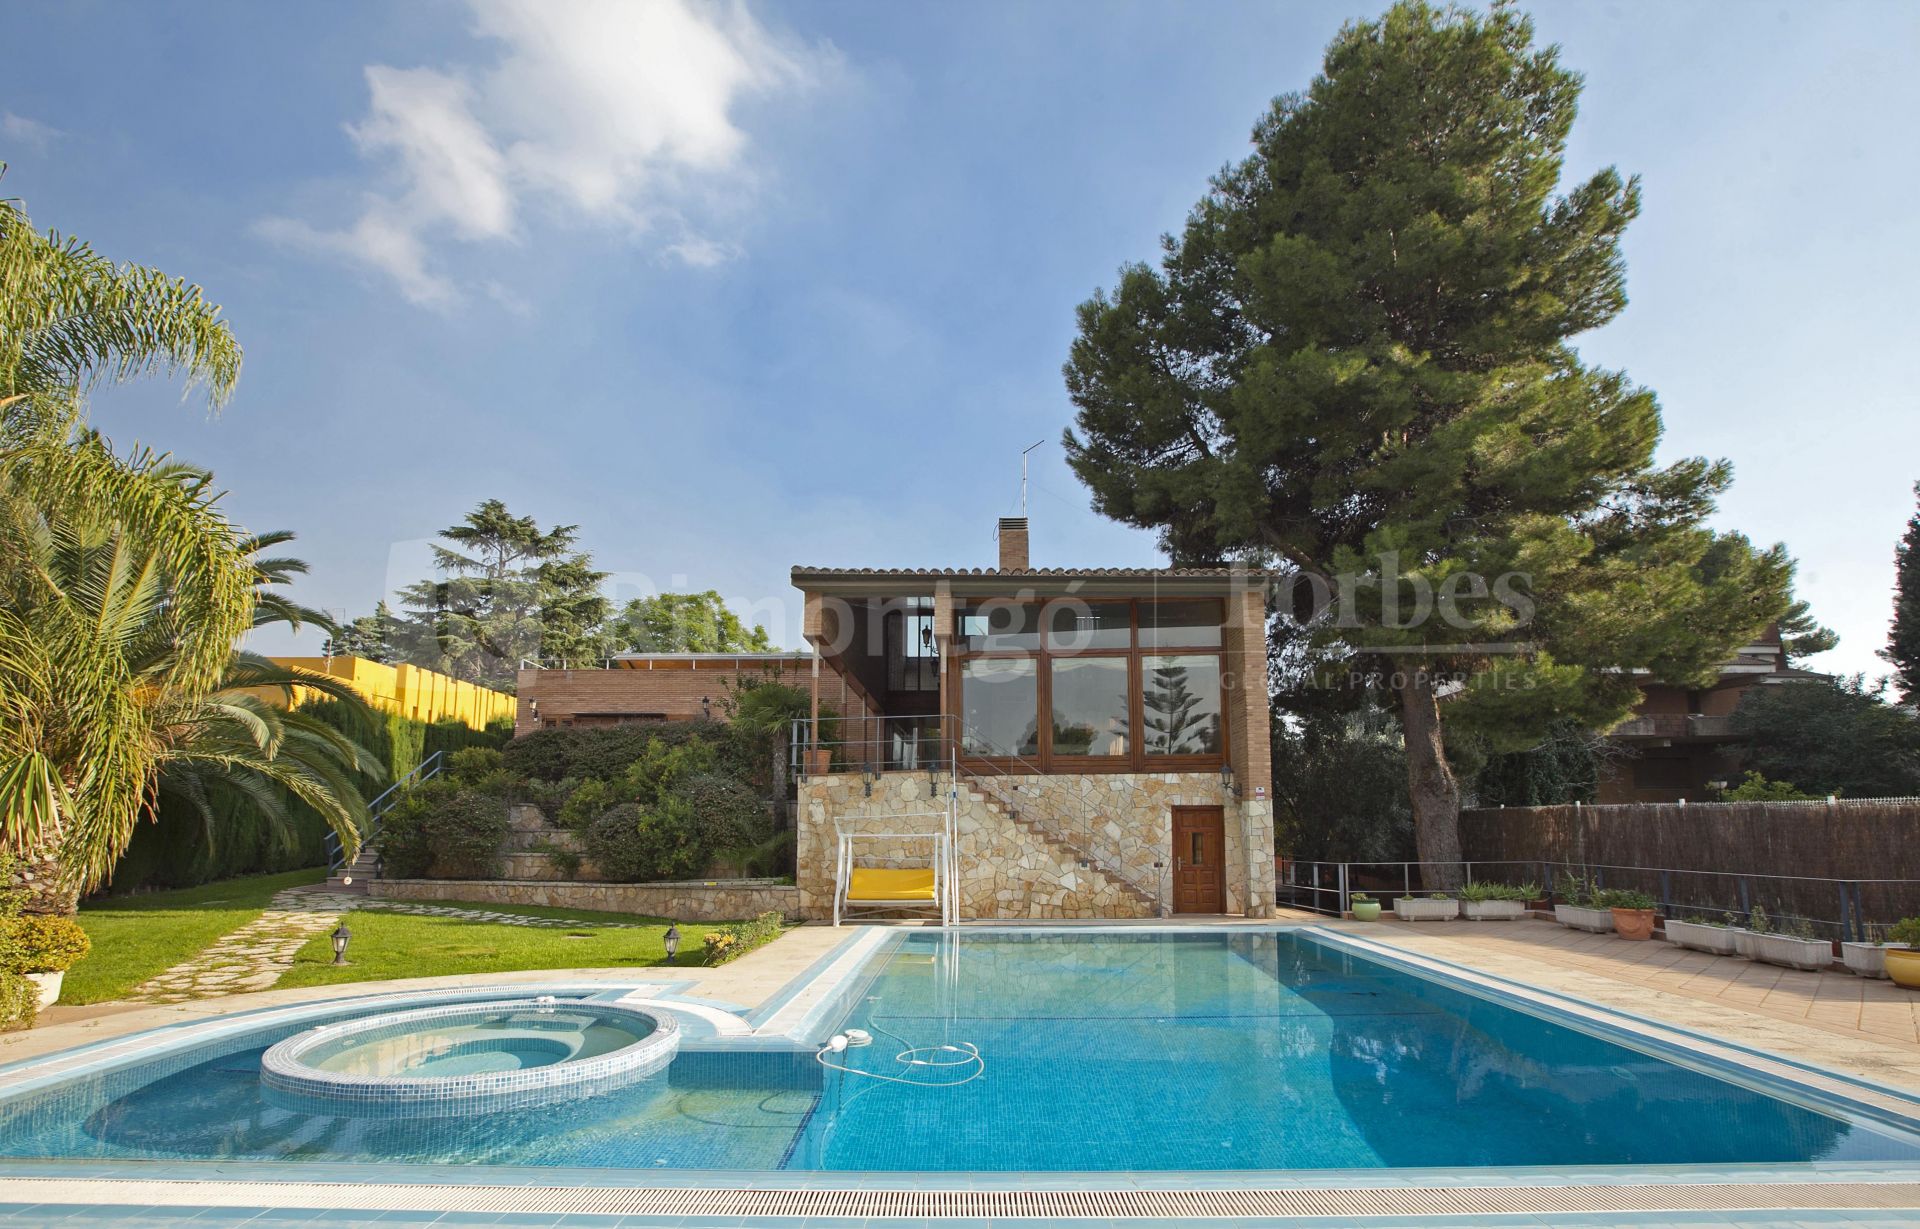 Villa con piscina y bodega de vino en la urbanización Santa Apolonia, Valencia.